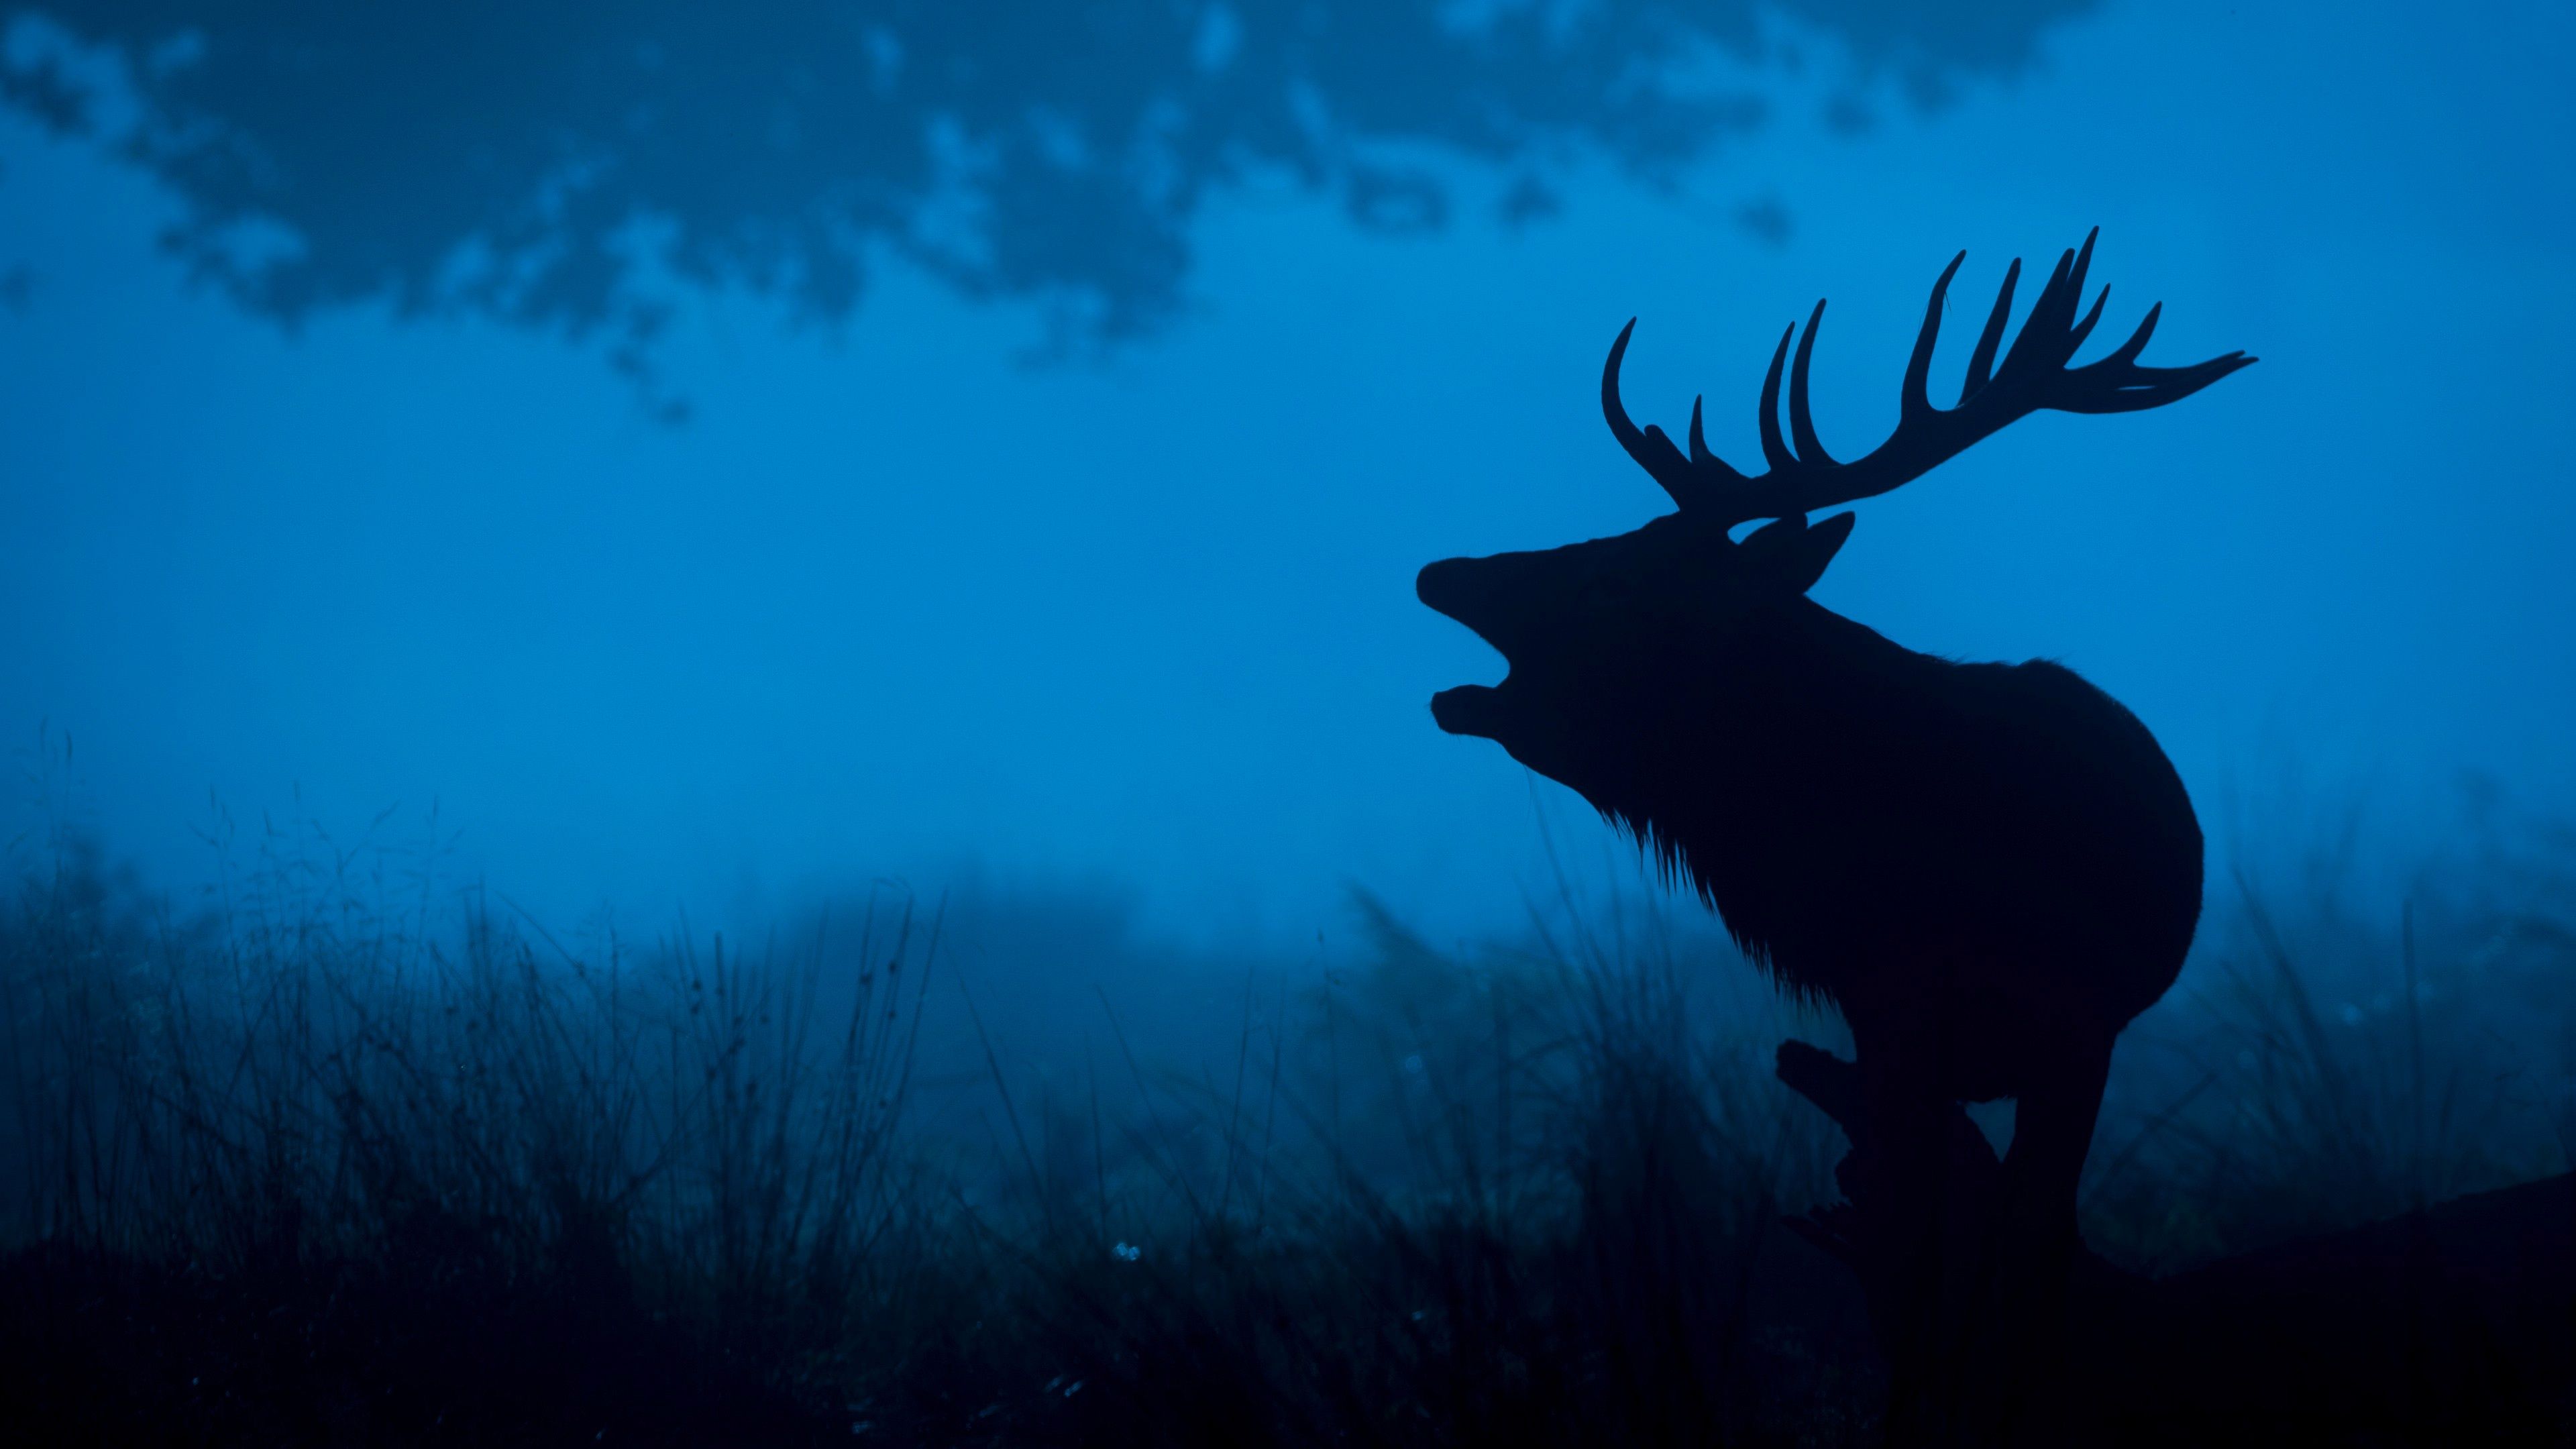 A deer standing in the woods at night - Deer